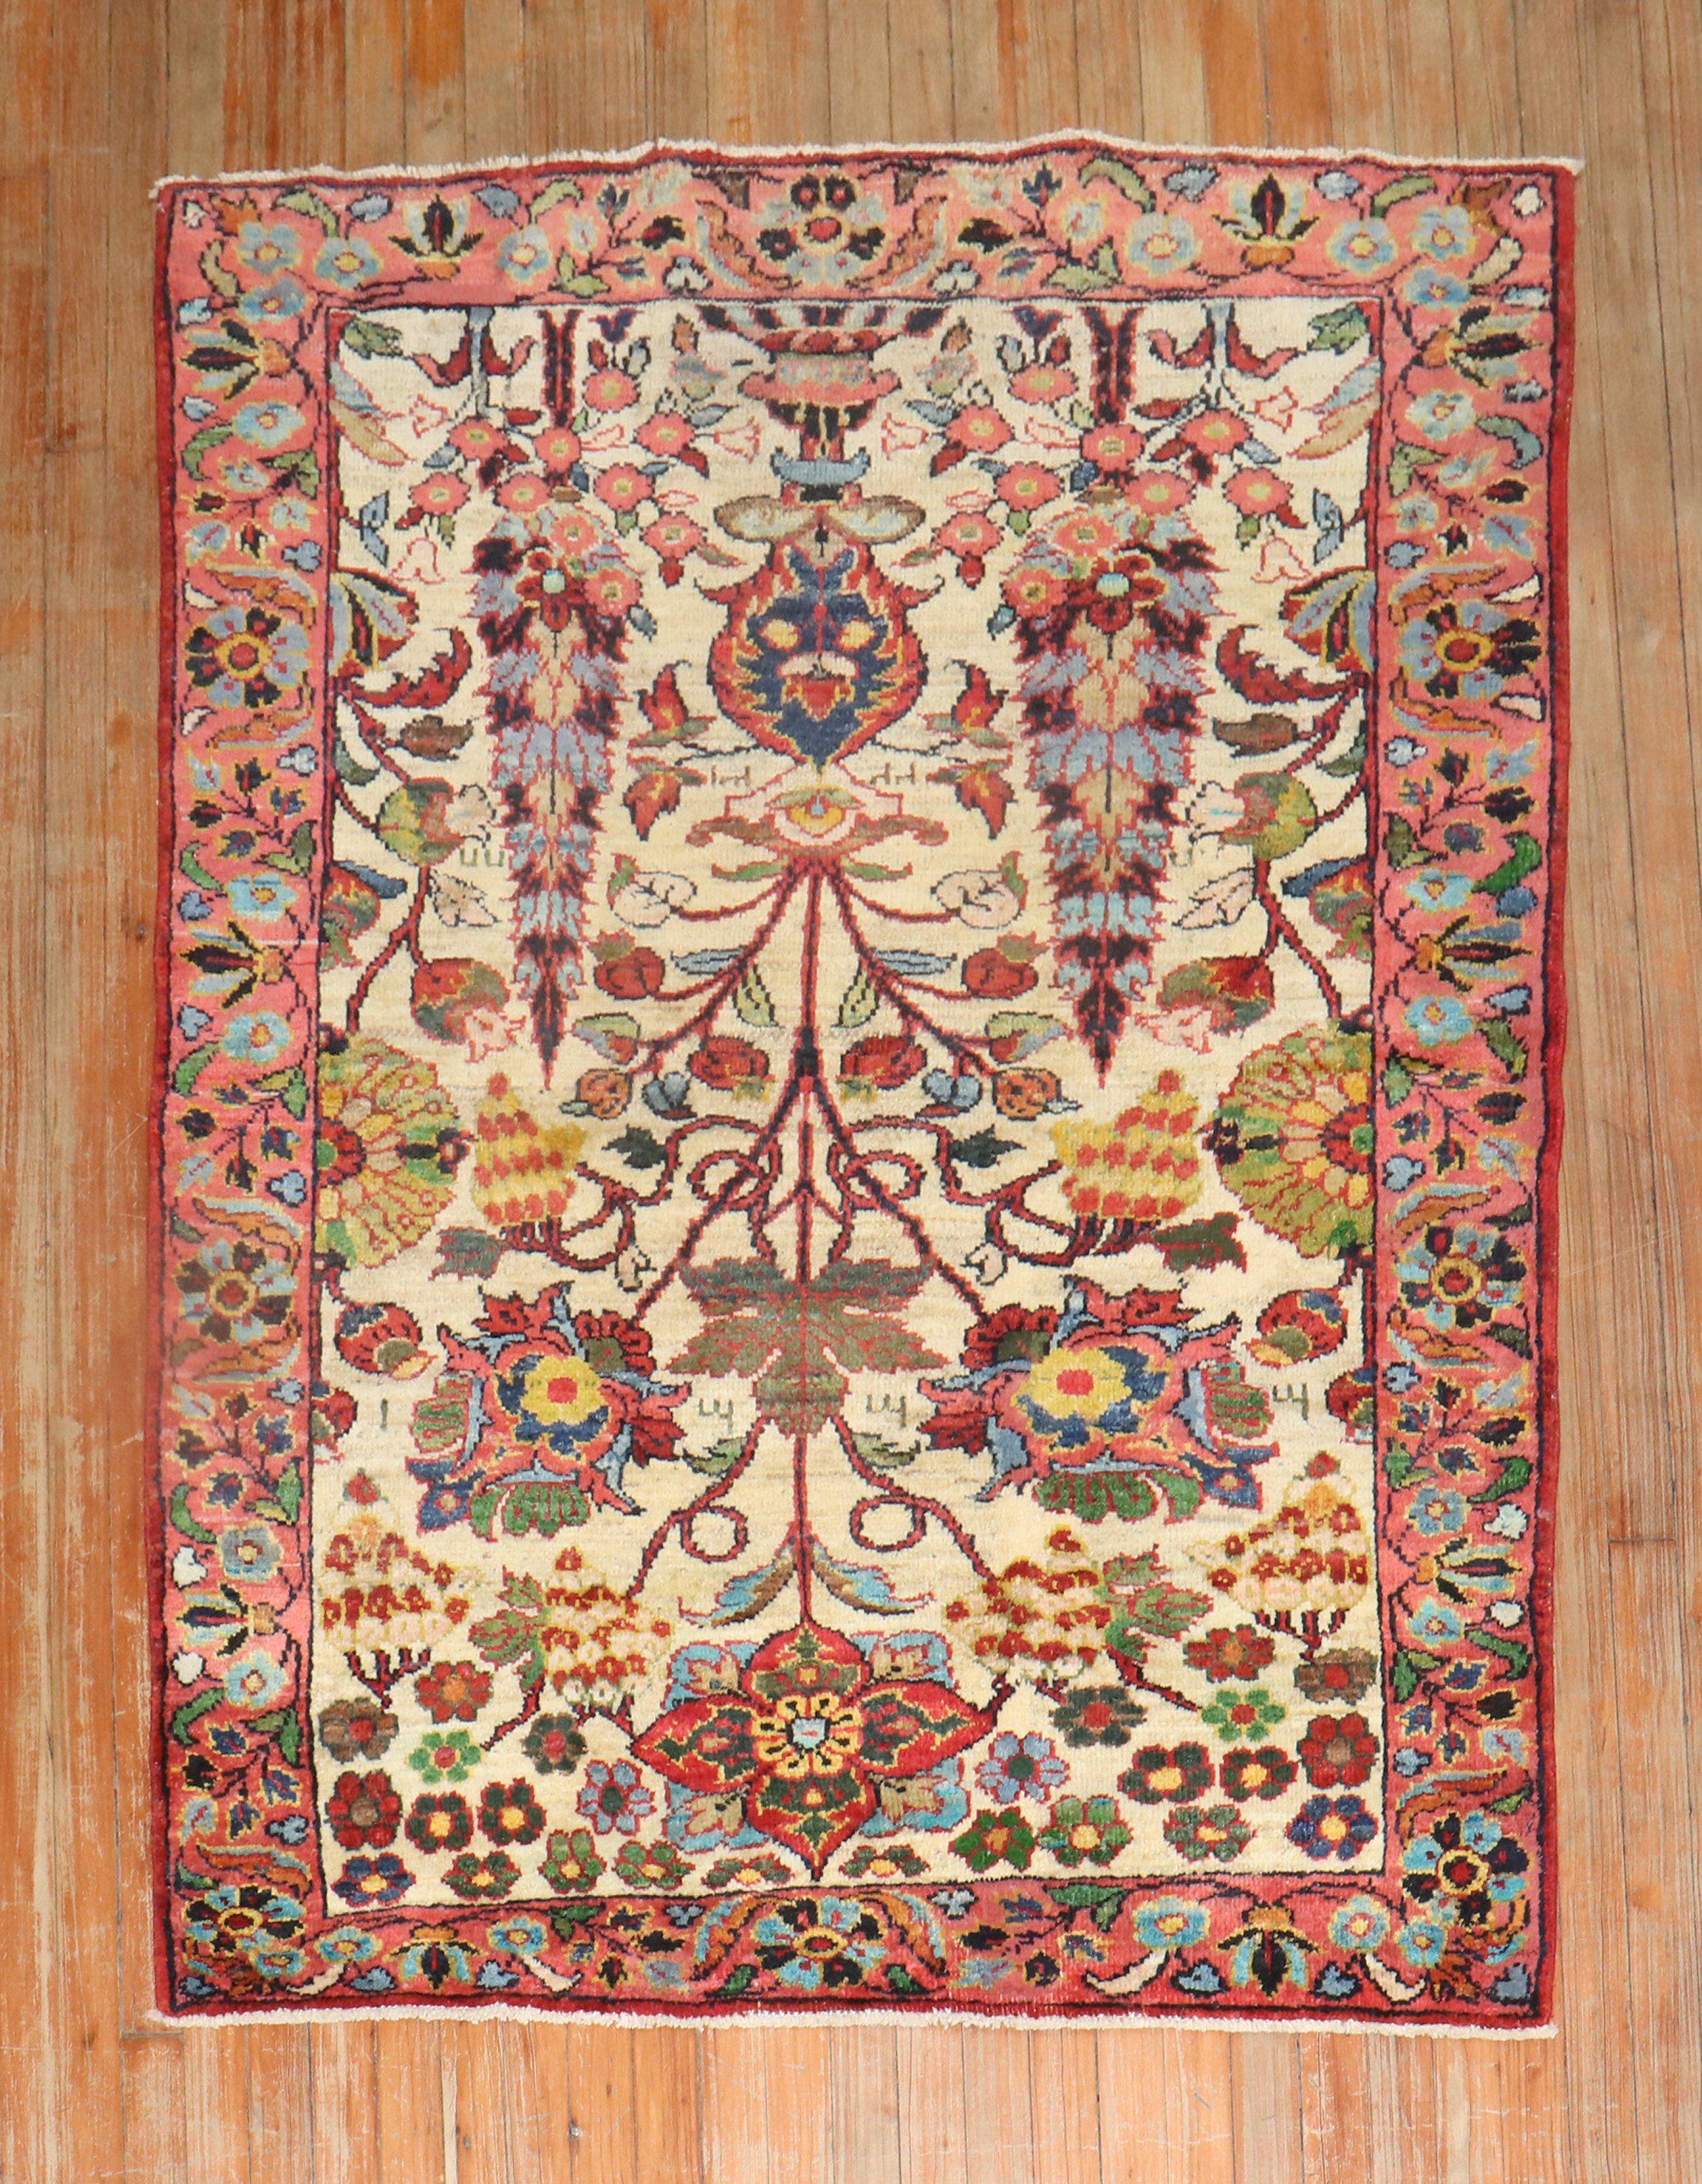 Mitte des 20. Jahrhunderts Türkischer anatolischer Teppich aus der Mitte des 20. Jahrhunderts mit einem juwelenfarbenen, farbenfrohen Blumenmuster, das an Teppiche aus dem persischen Bakhtiari-Viertel erinnert.

Maße: 1,22 m x 2,9 m (4'2'x 5'9').